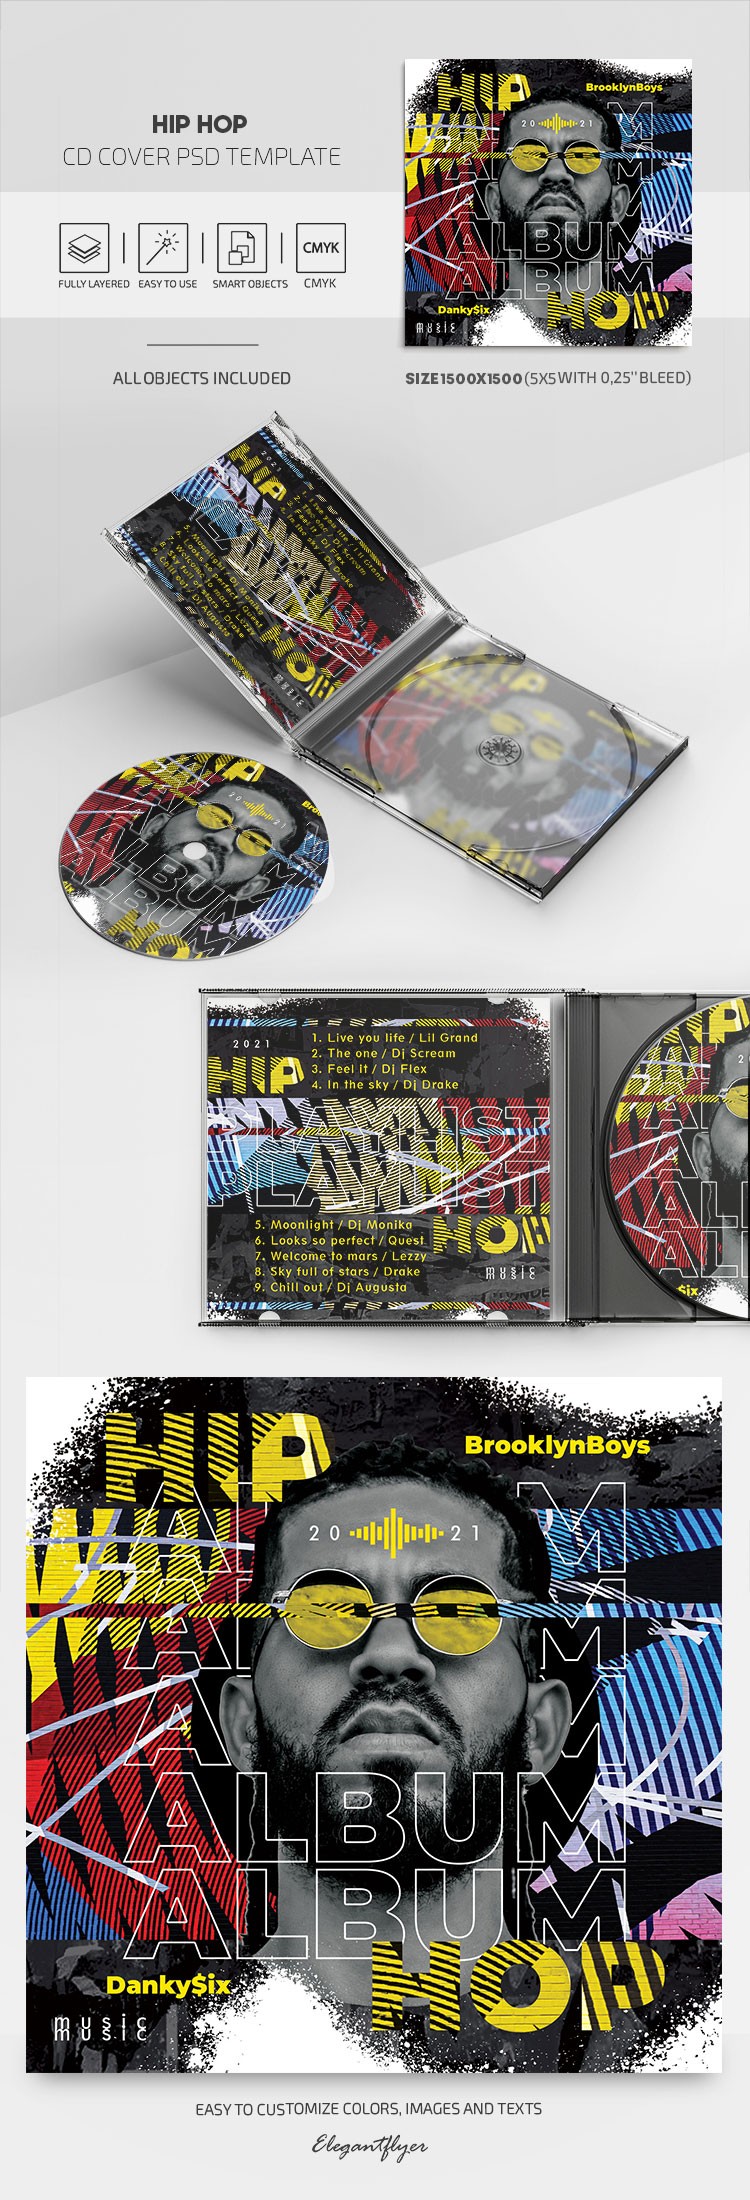 Hip Hop CD Cover by ElegantFlyer